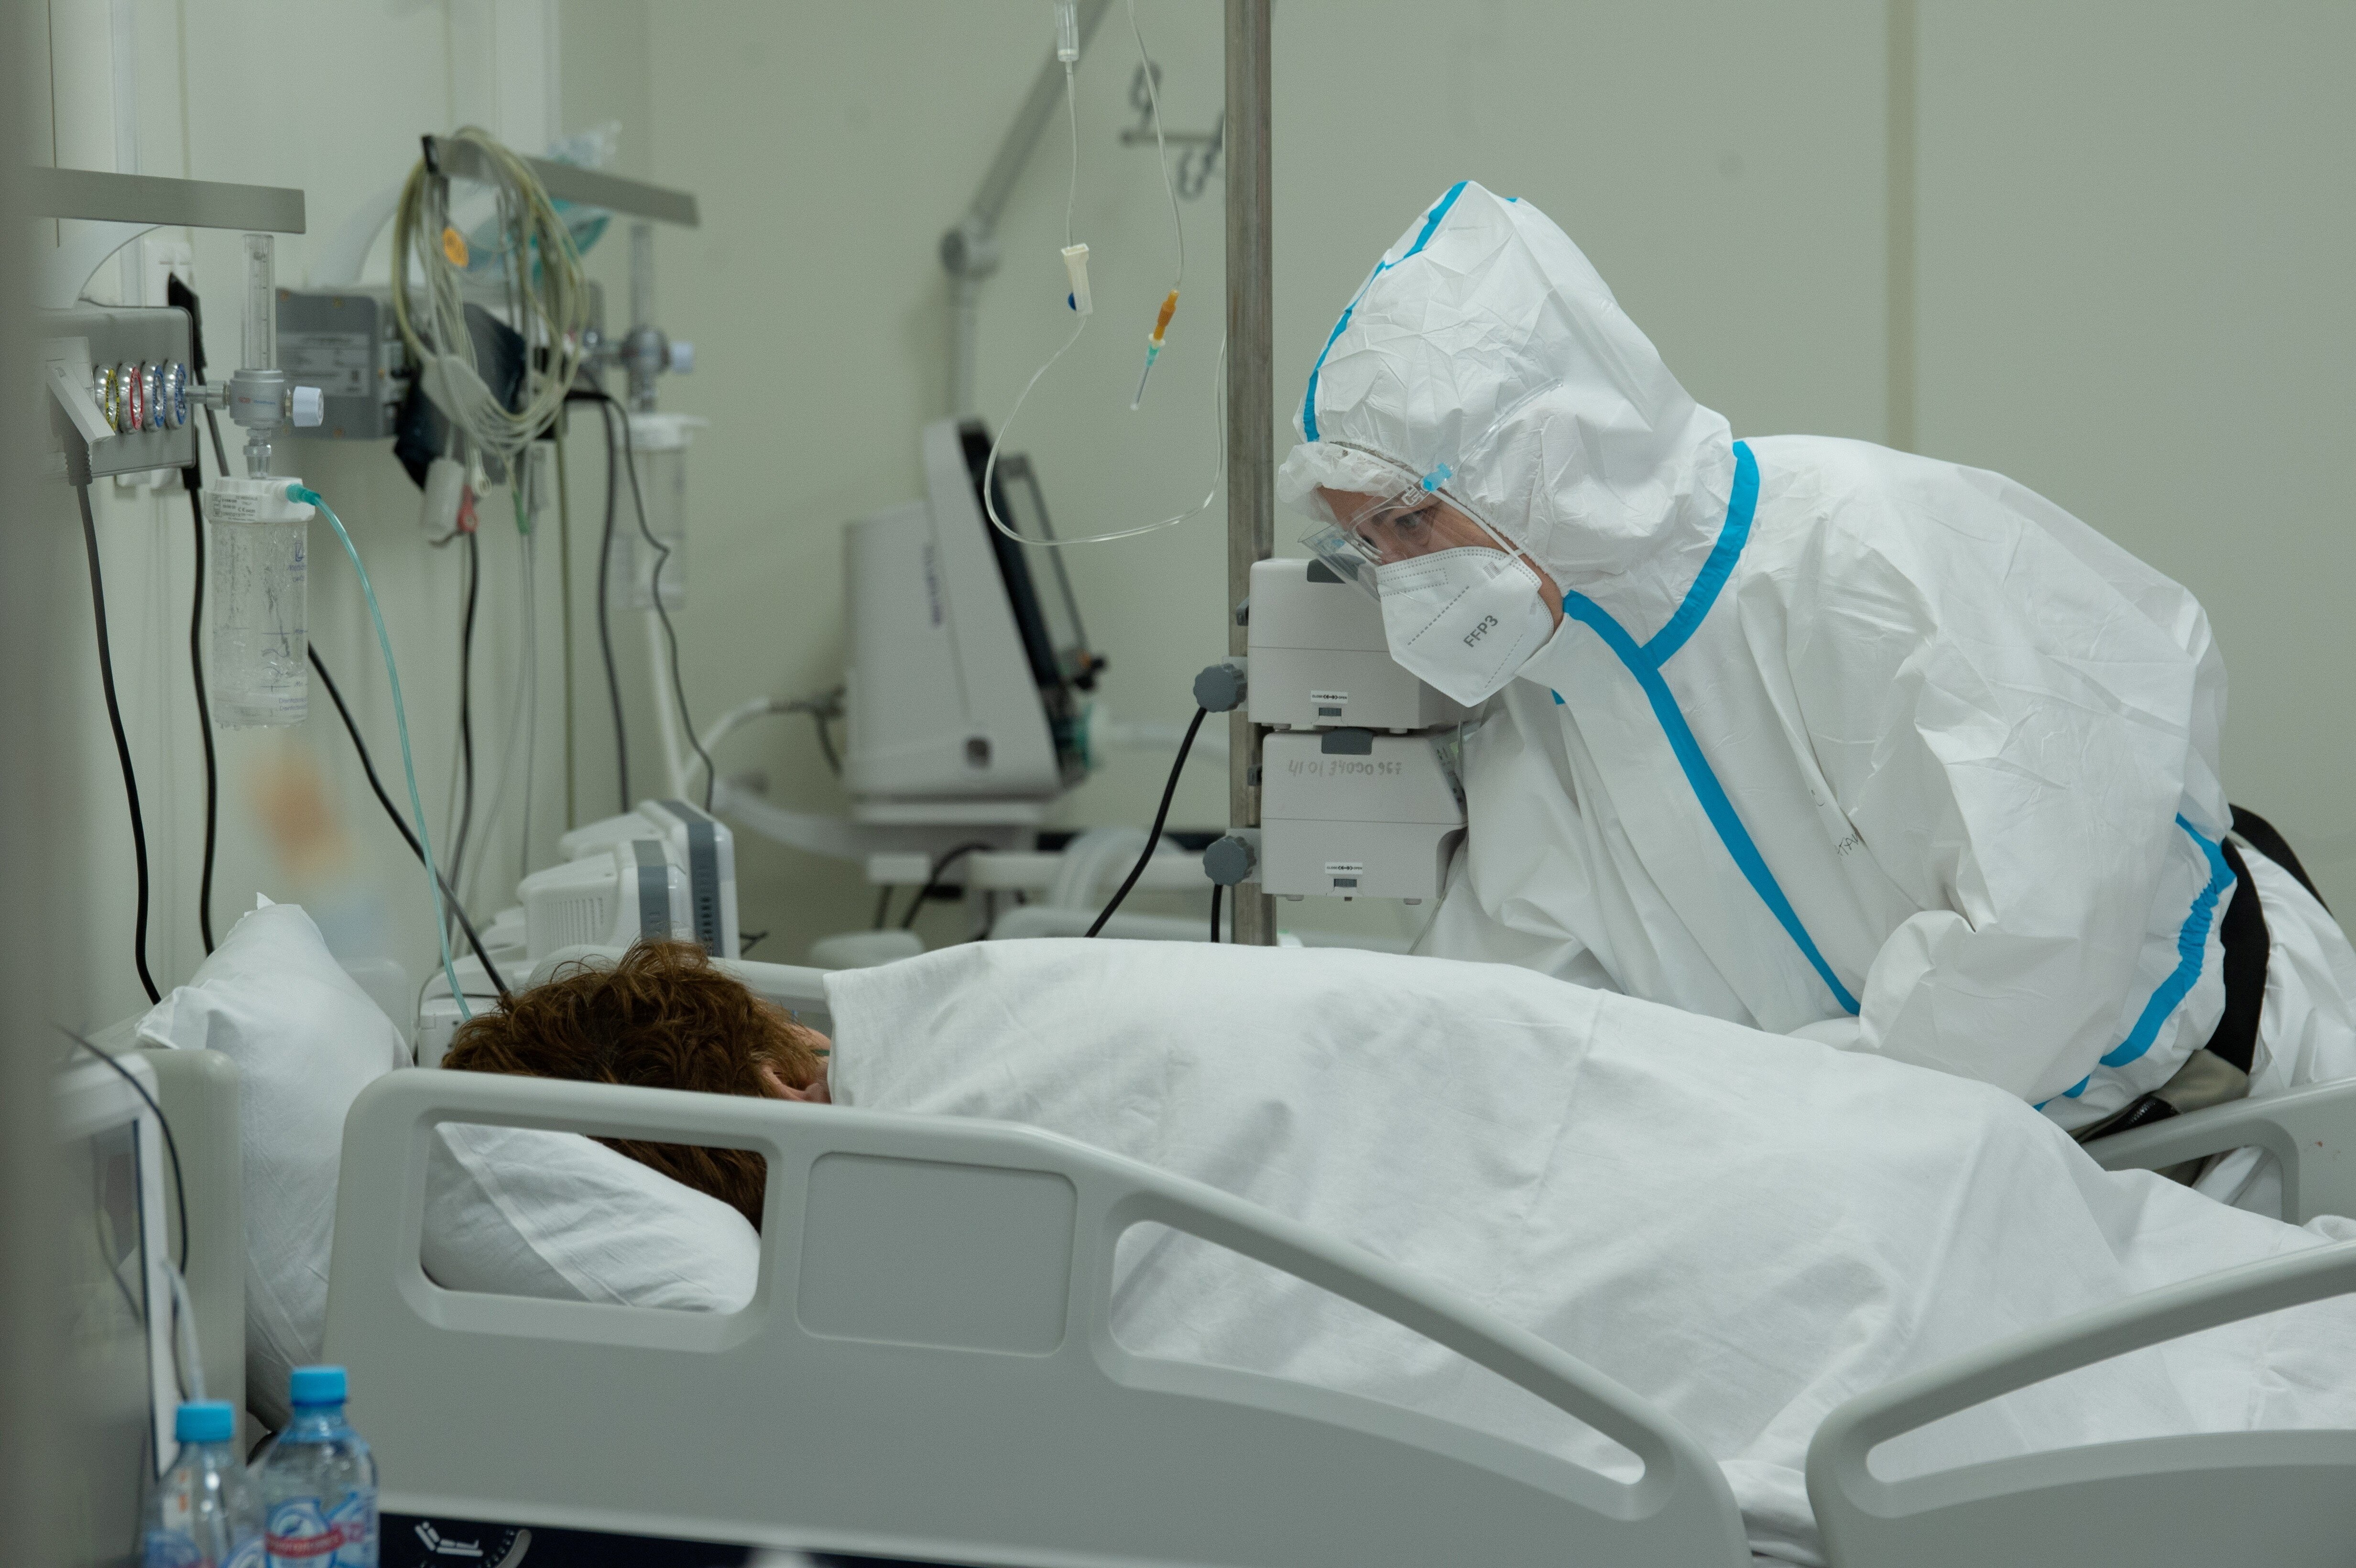 Trabalhador médico cuida de um paciente com Covid-19